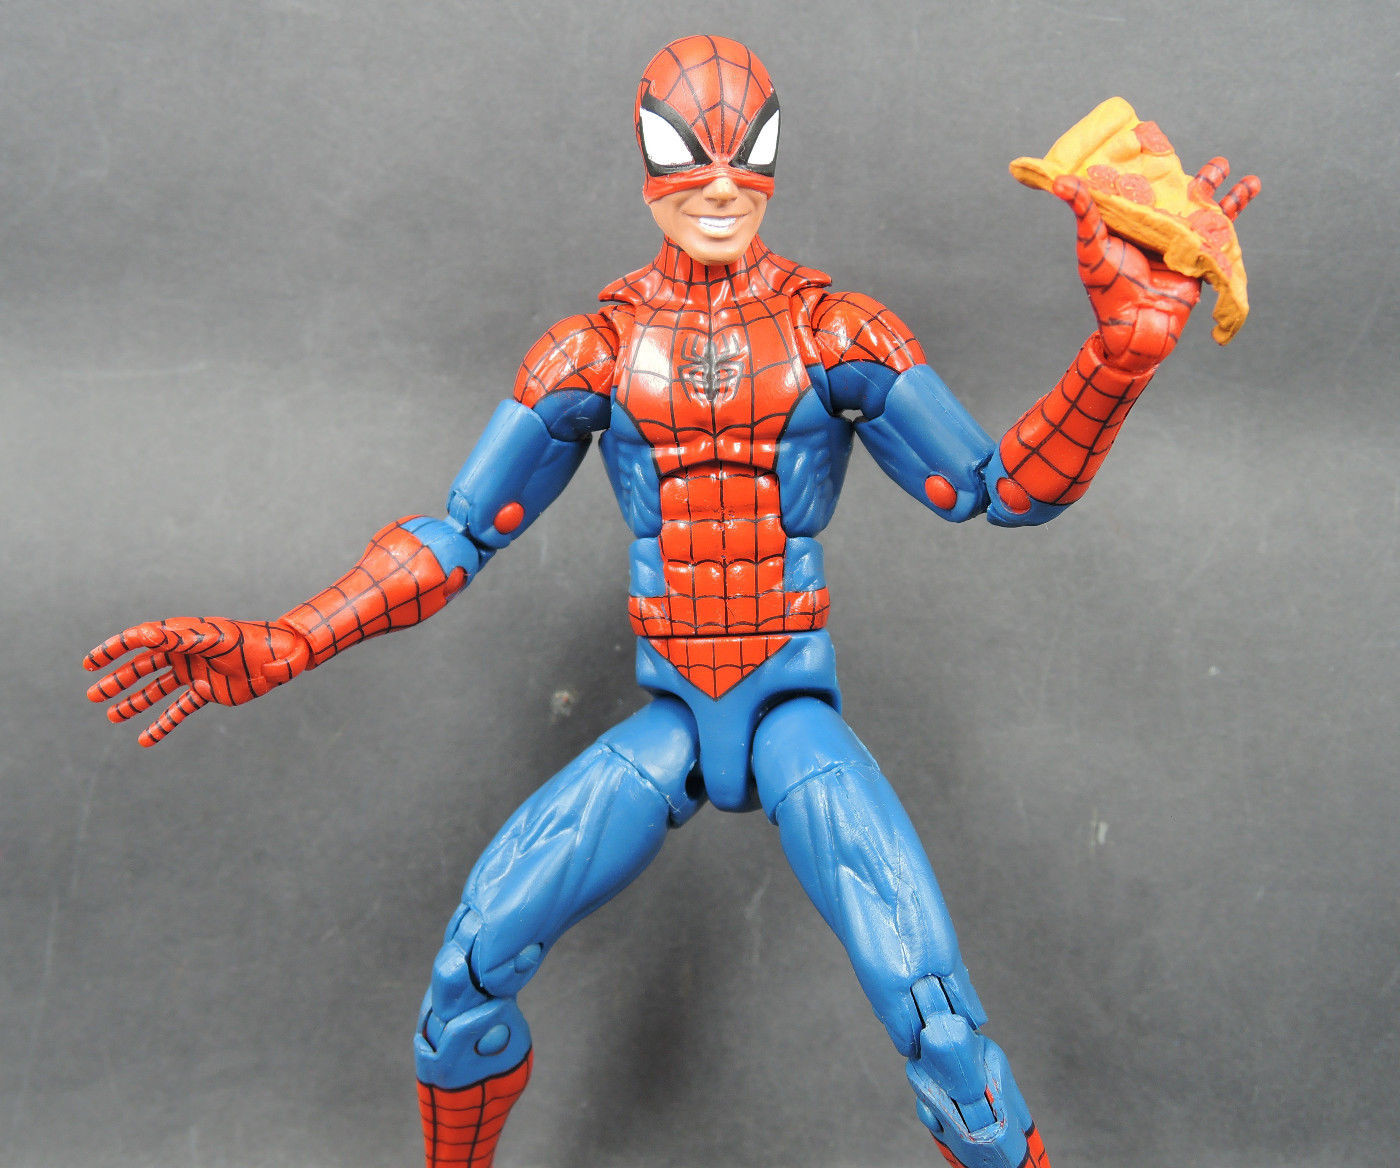 Marvel Legends Infinite Series Scarlet Spiderman & Peter Parker Action Figure